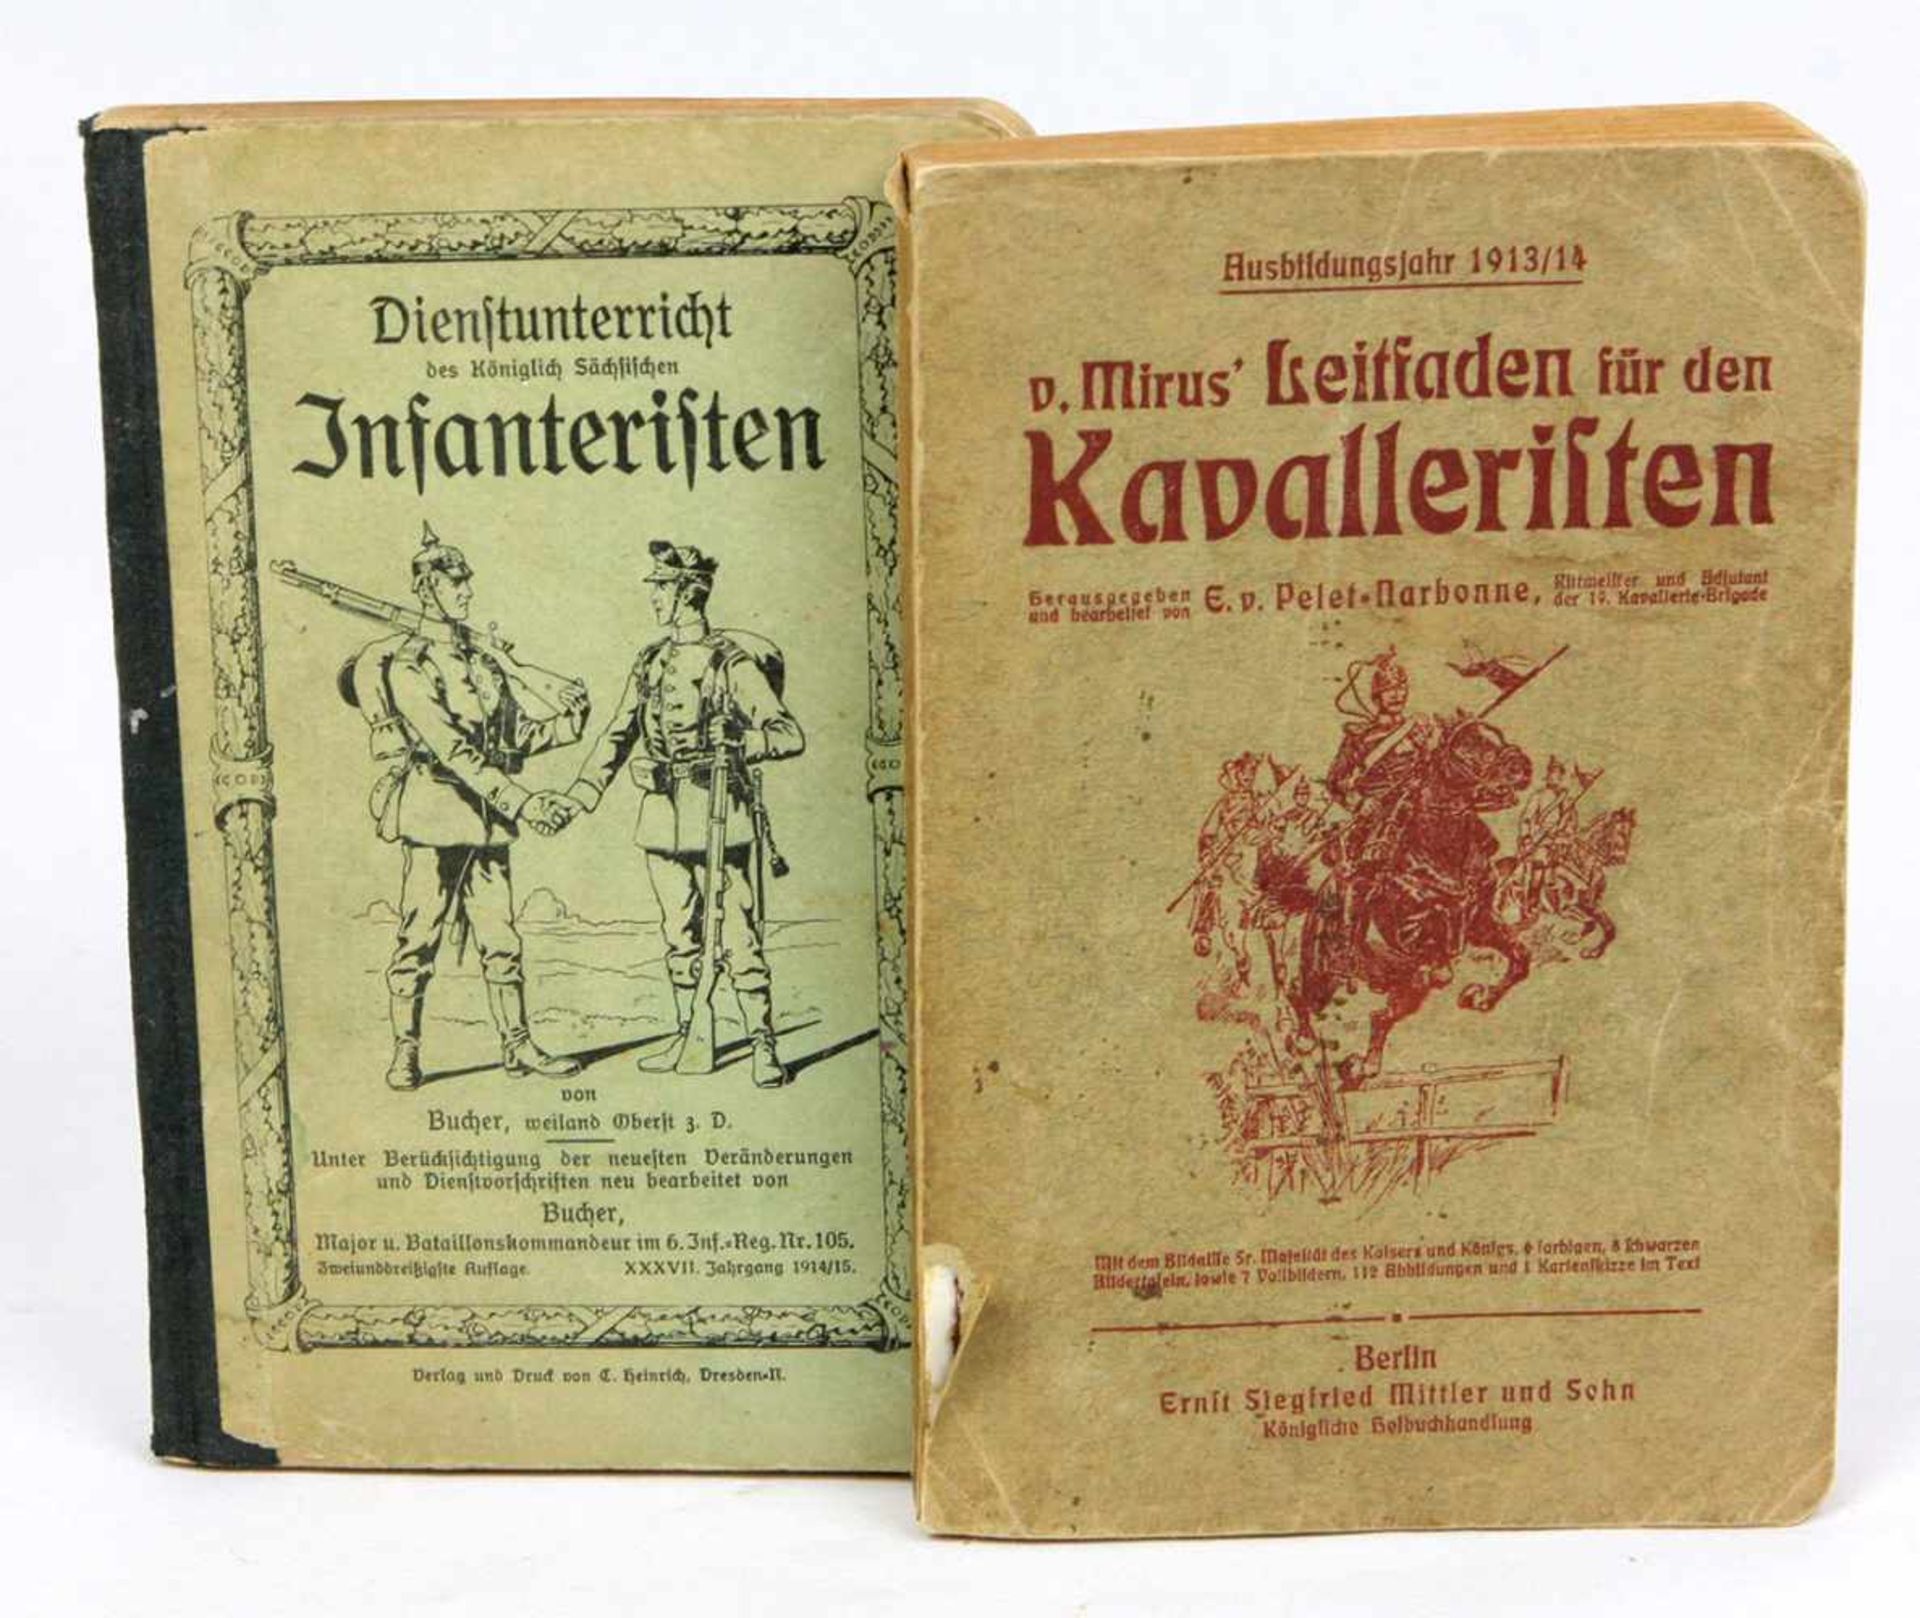 2 Militär Bücher 1913/15*v. Mirus' Leitfaden für den Kavalleristen* Ausbildungsjahr 1913/14, hrsg.